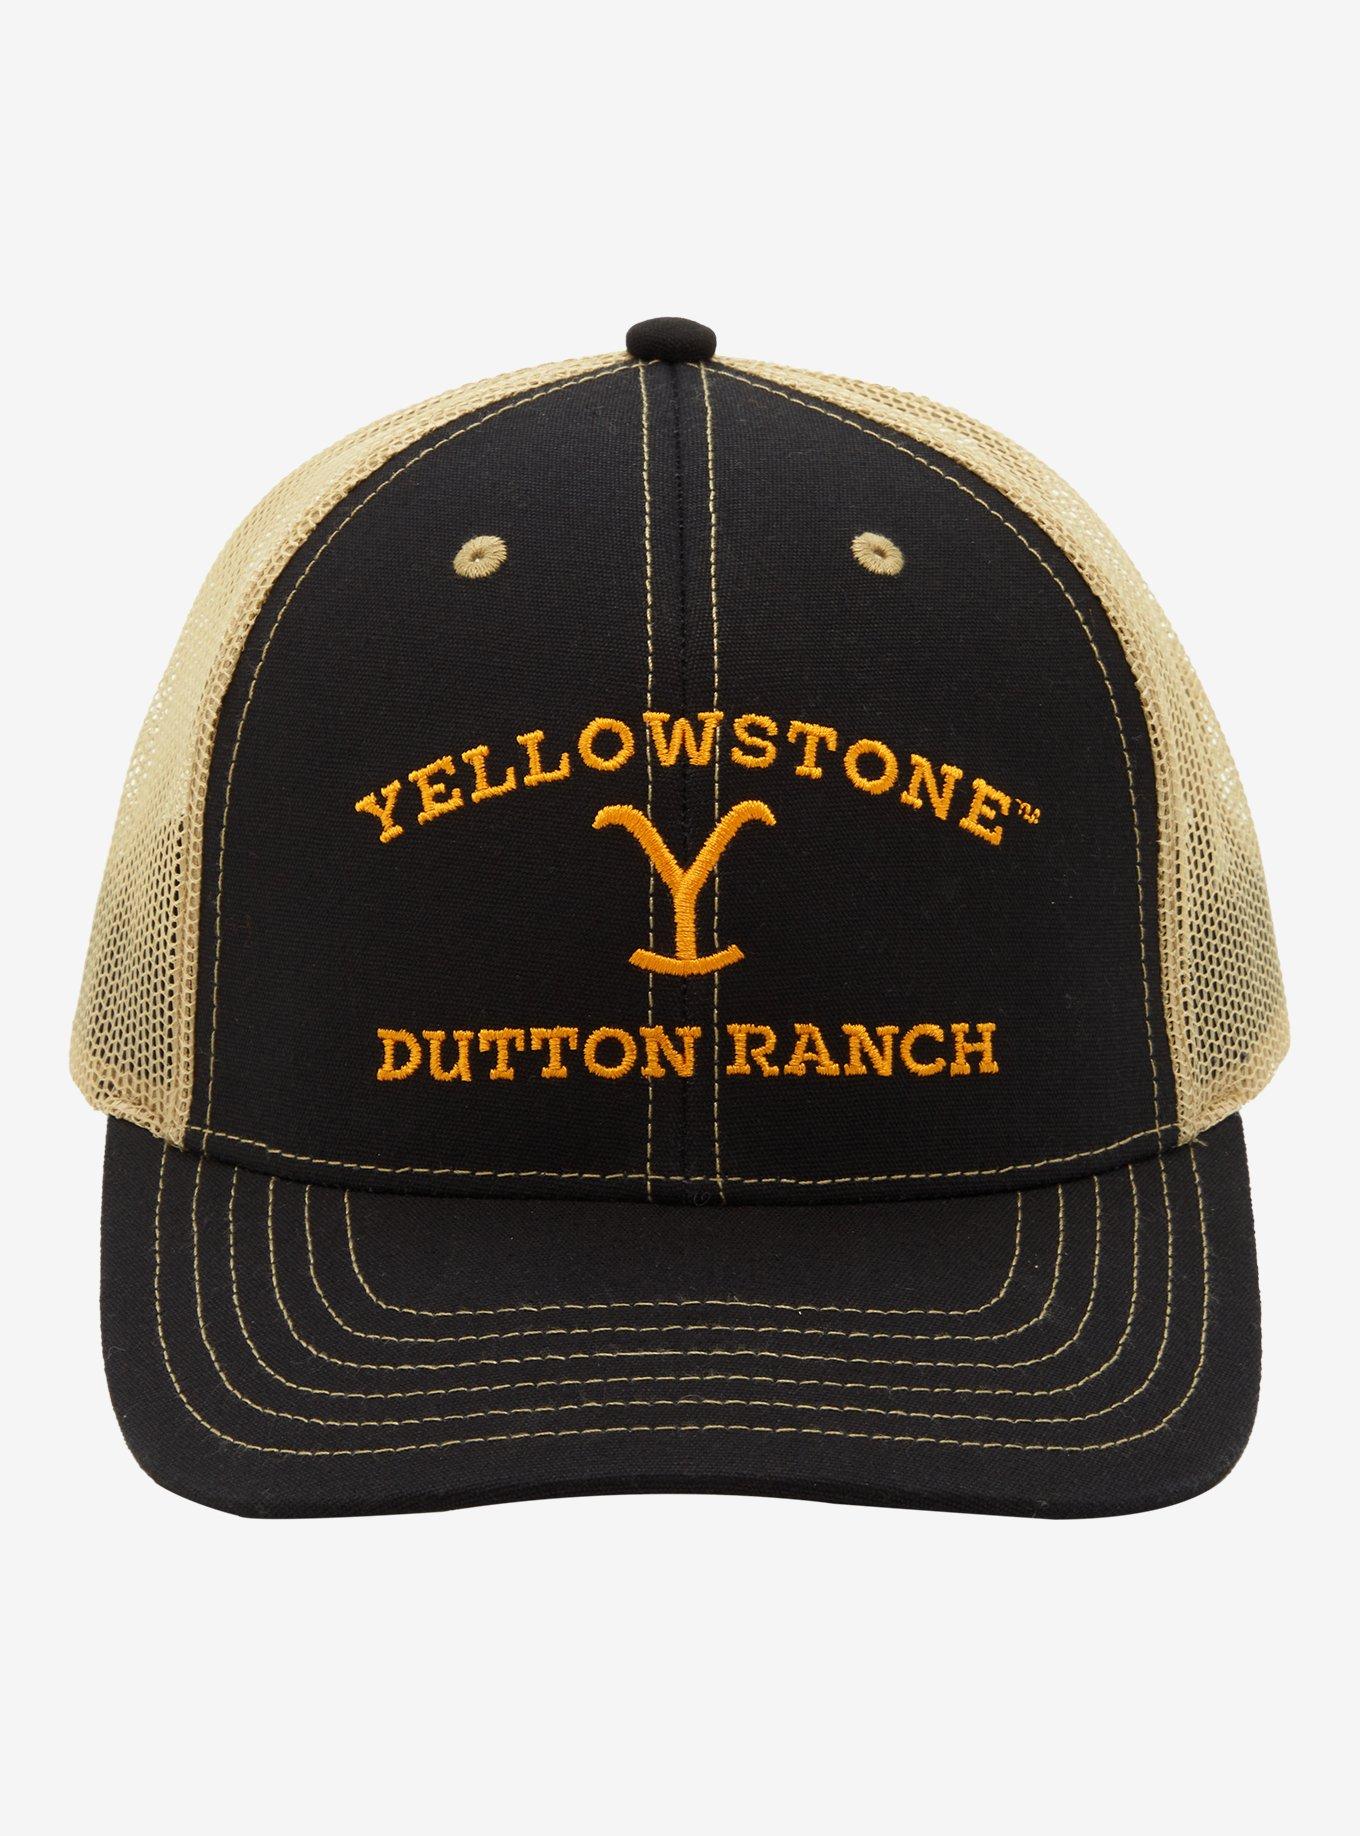 Yellowstone Dutton Ranch Logo Embroidered Trucker Hat, , alternate